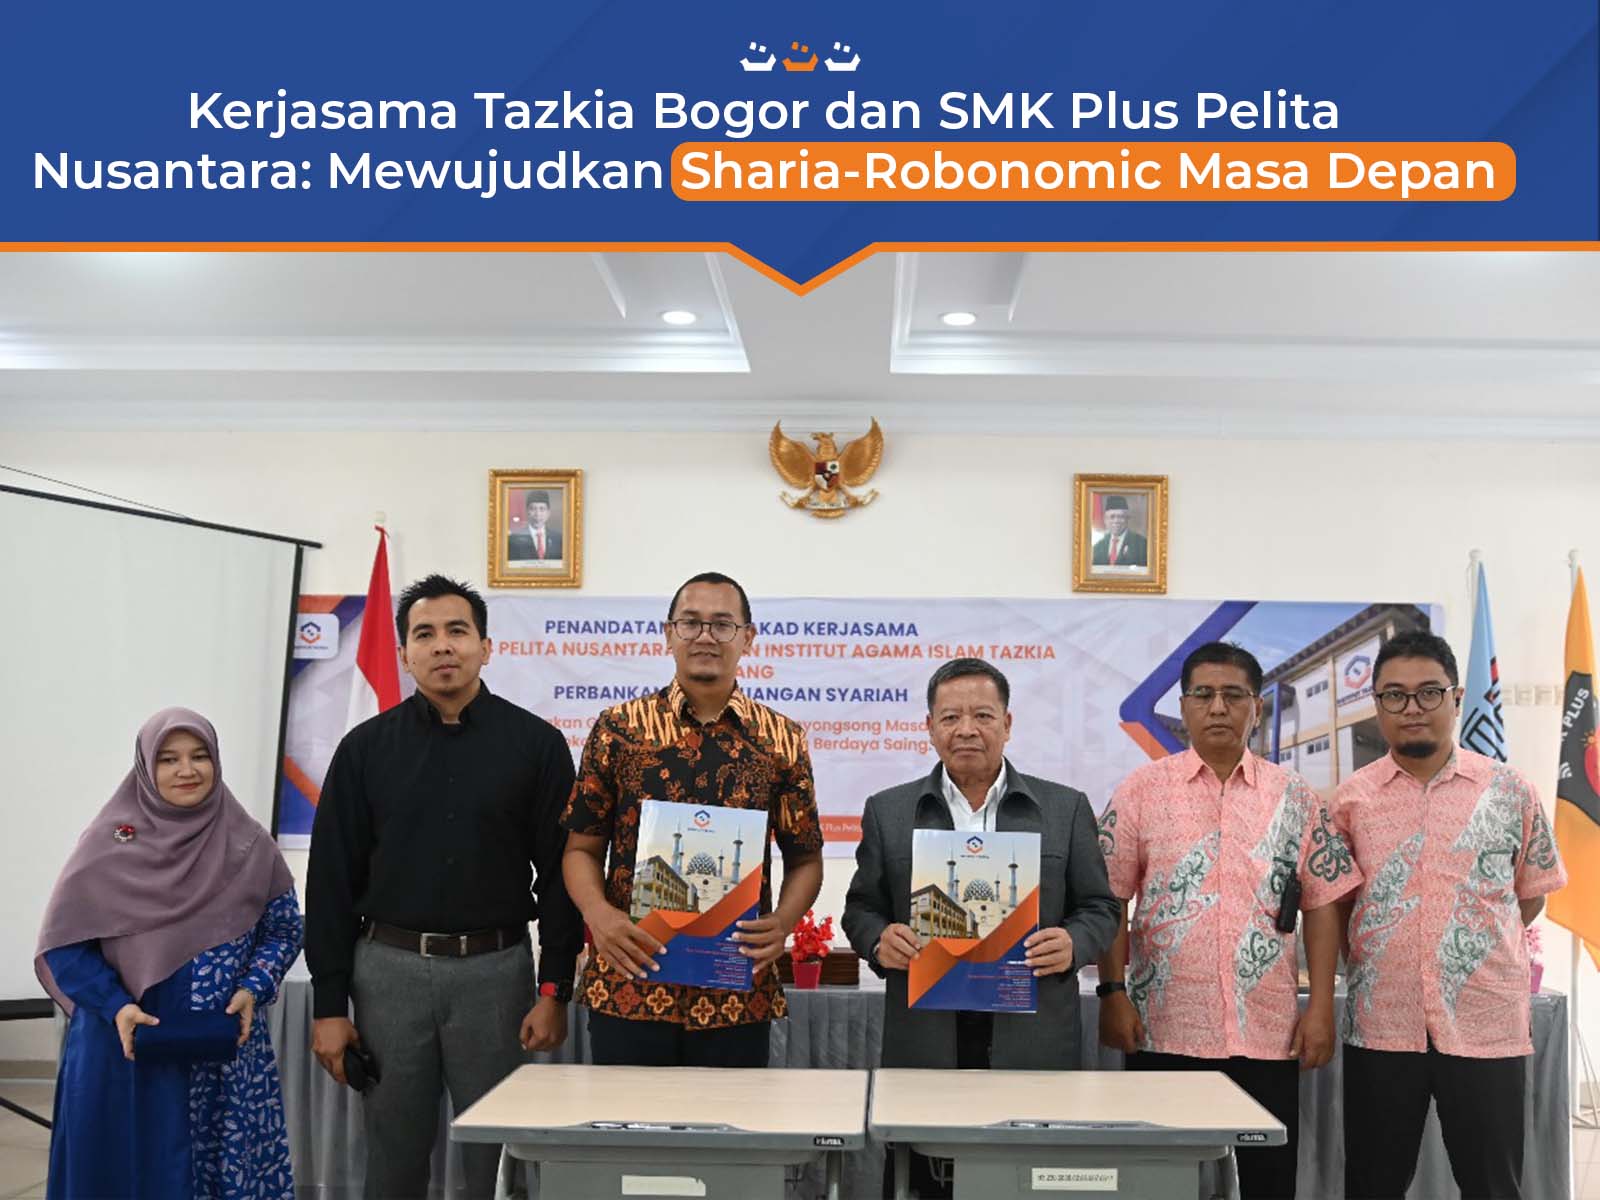 Kerjasama Tazkia Bogor dan SMK Plus Pelita Nusantara: Mewujudkan Sharia-Robonomic Masa Depan